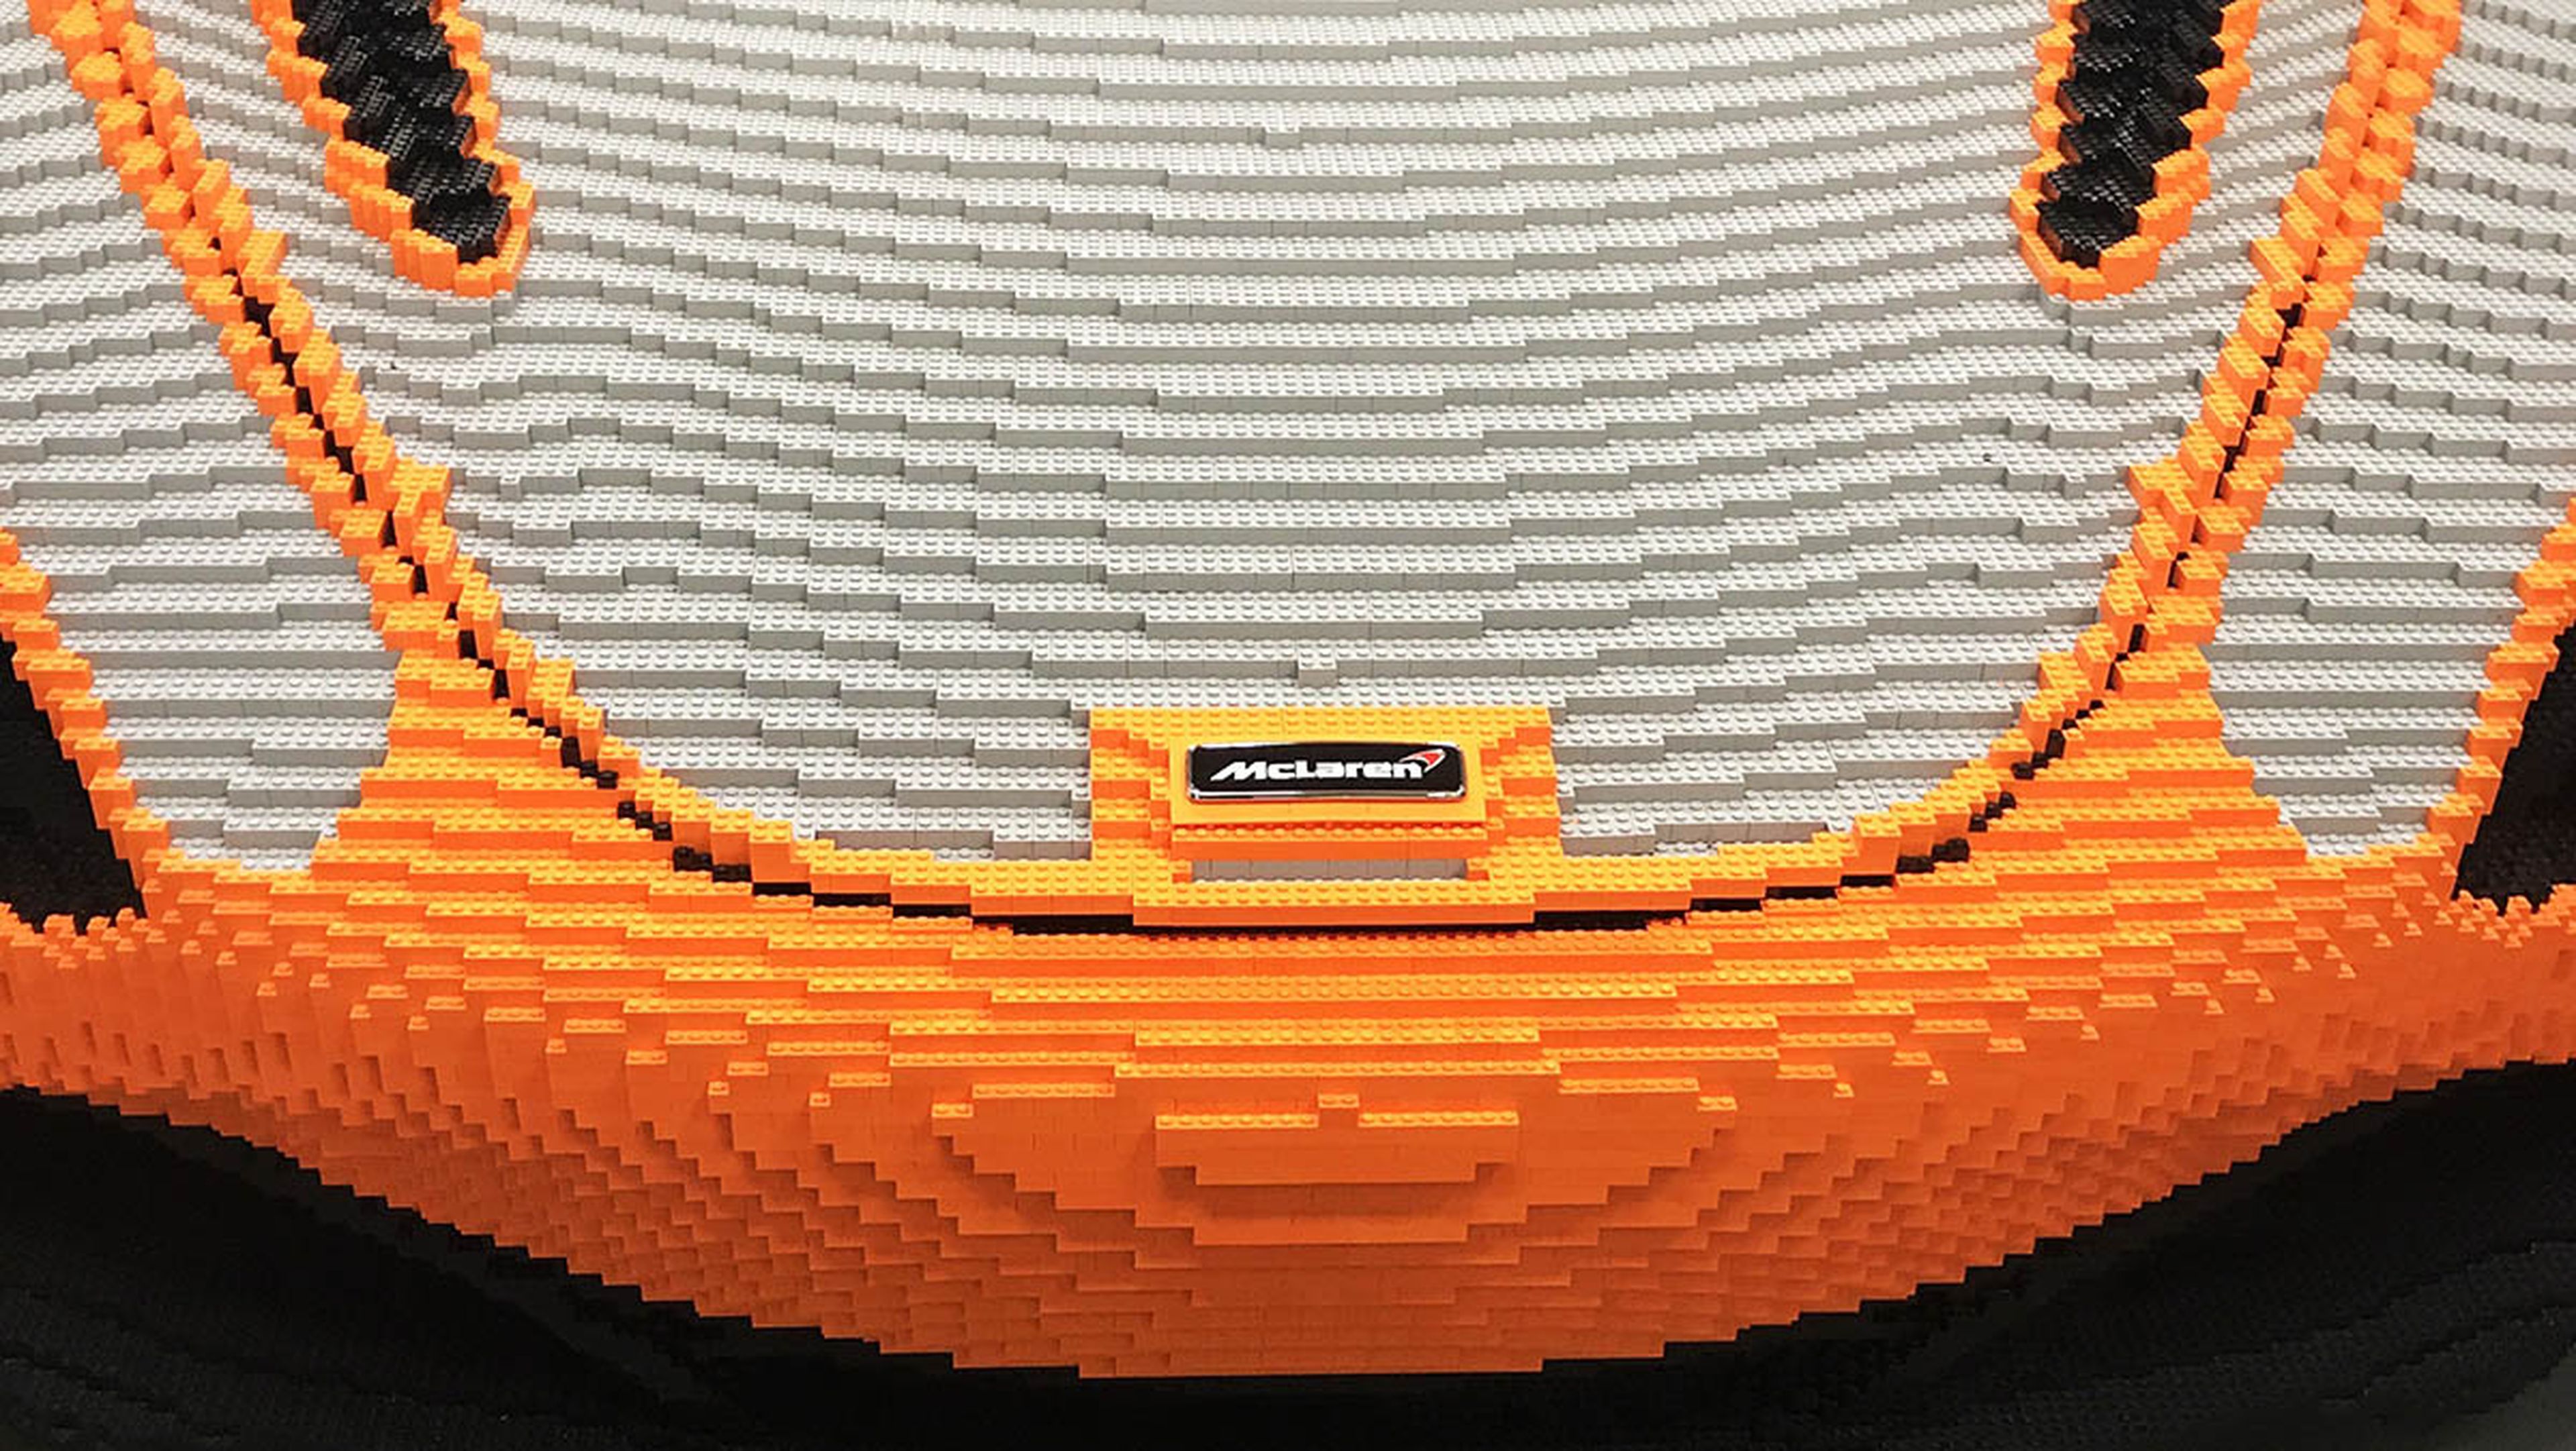 El McLaren 720S de Lego